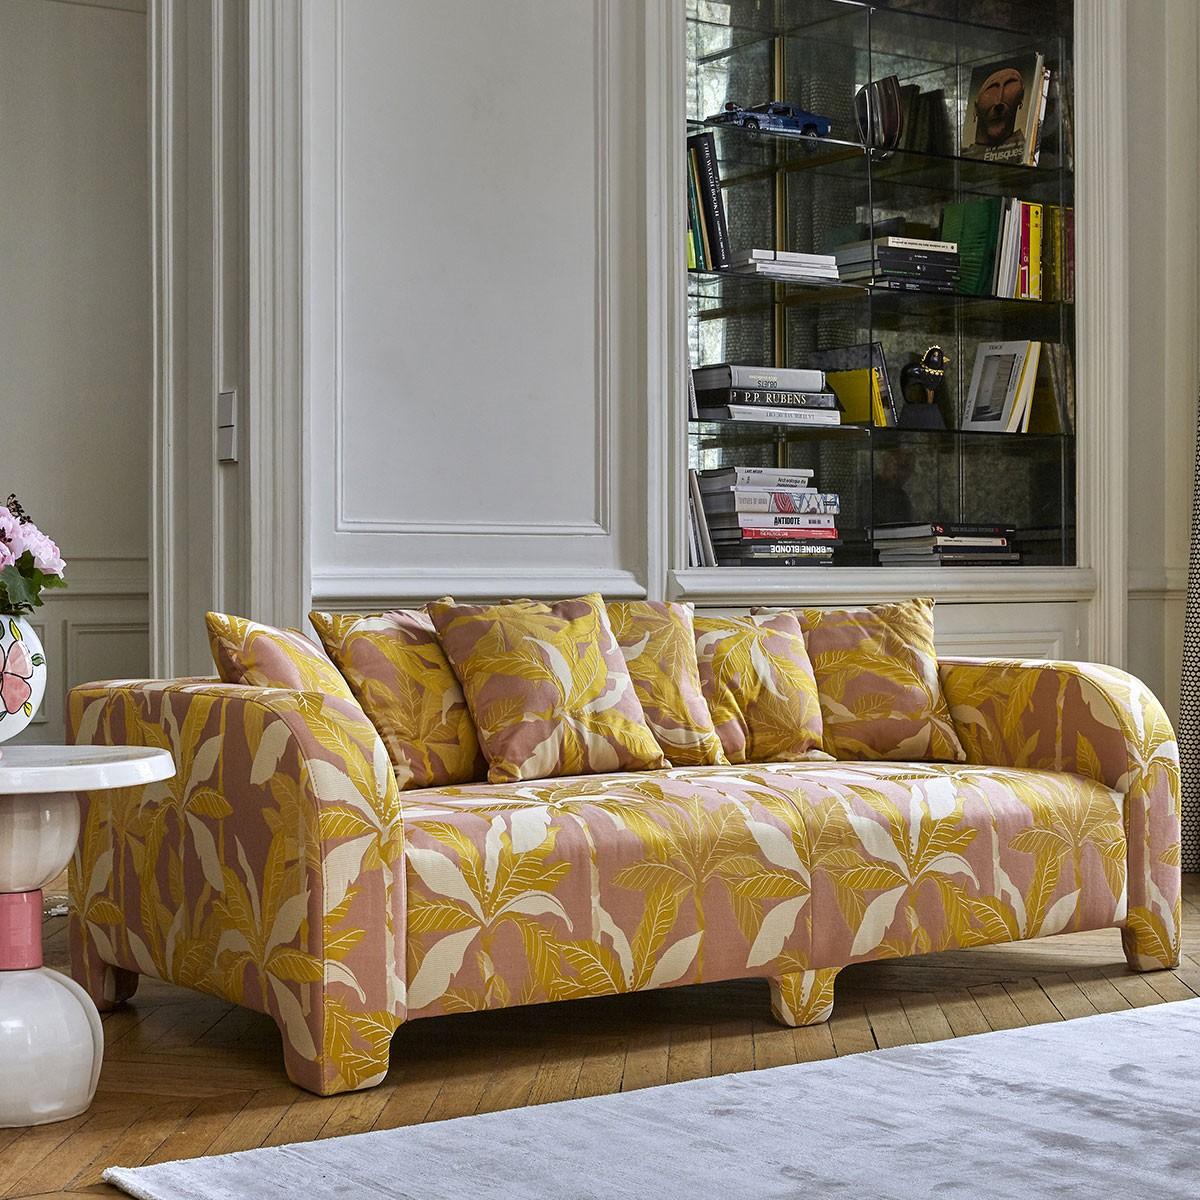 Popus Editions Graziella 2 Seater-Sofa mit rosa Como-Samtpolsterung

Ein Fuß, der einen anderen verbirgt. Ein Kissen, das ein anderes verdeckt. Eine Kurve, die eine andere verbirgt, mit zeitgenössischen Linien und einem Sockel, der wie ein